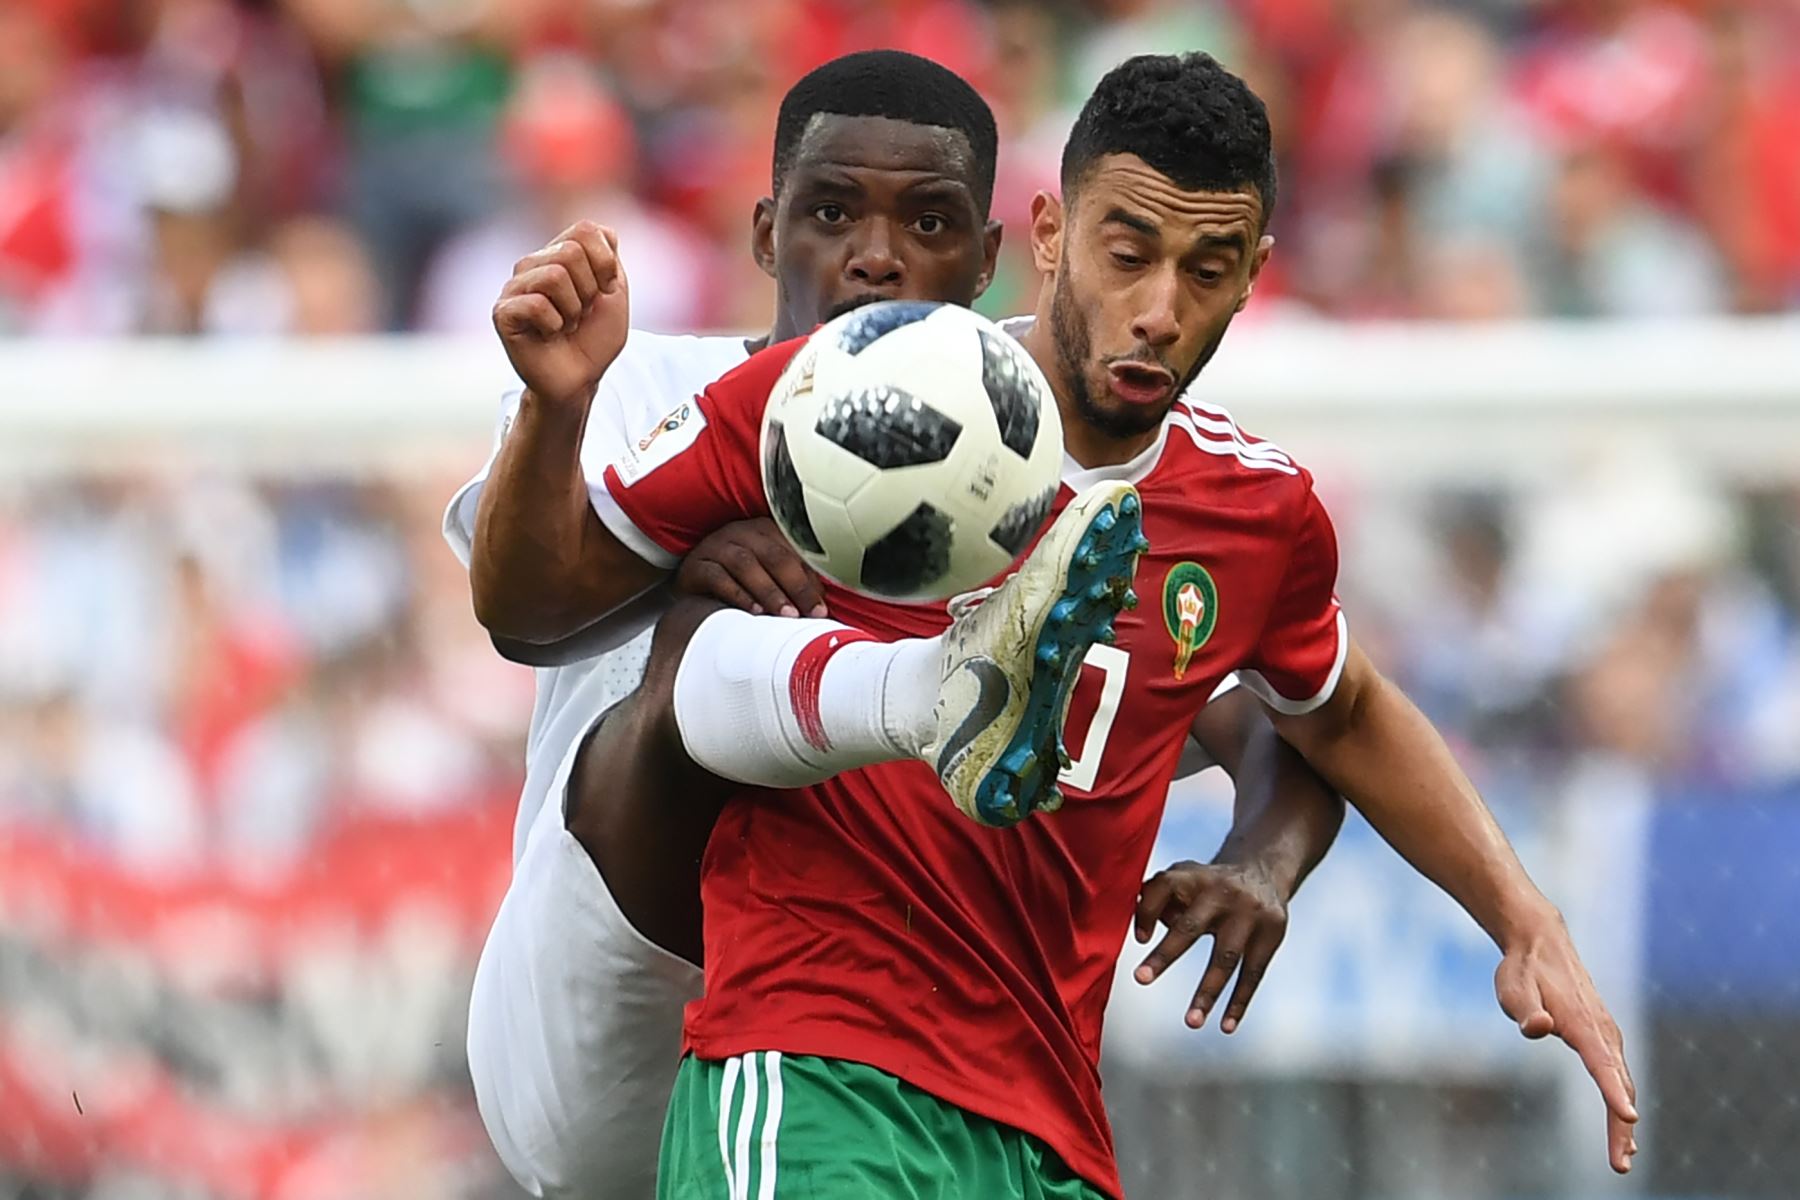 El centrocampista de Marruecos Younes Belhanda (R) compite por el balón con el mediocampista de Portugal William Carvalho durante el partido de fútbol del Grupo B de la Copa Mundial Rusia 2018 entre Portugal y Marruecos en el Estadio Luzhniki de Moscú el 20 de junio de 2018. / AFP